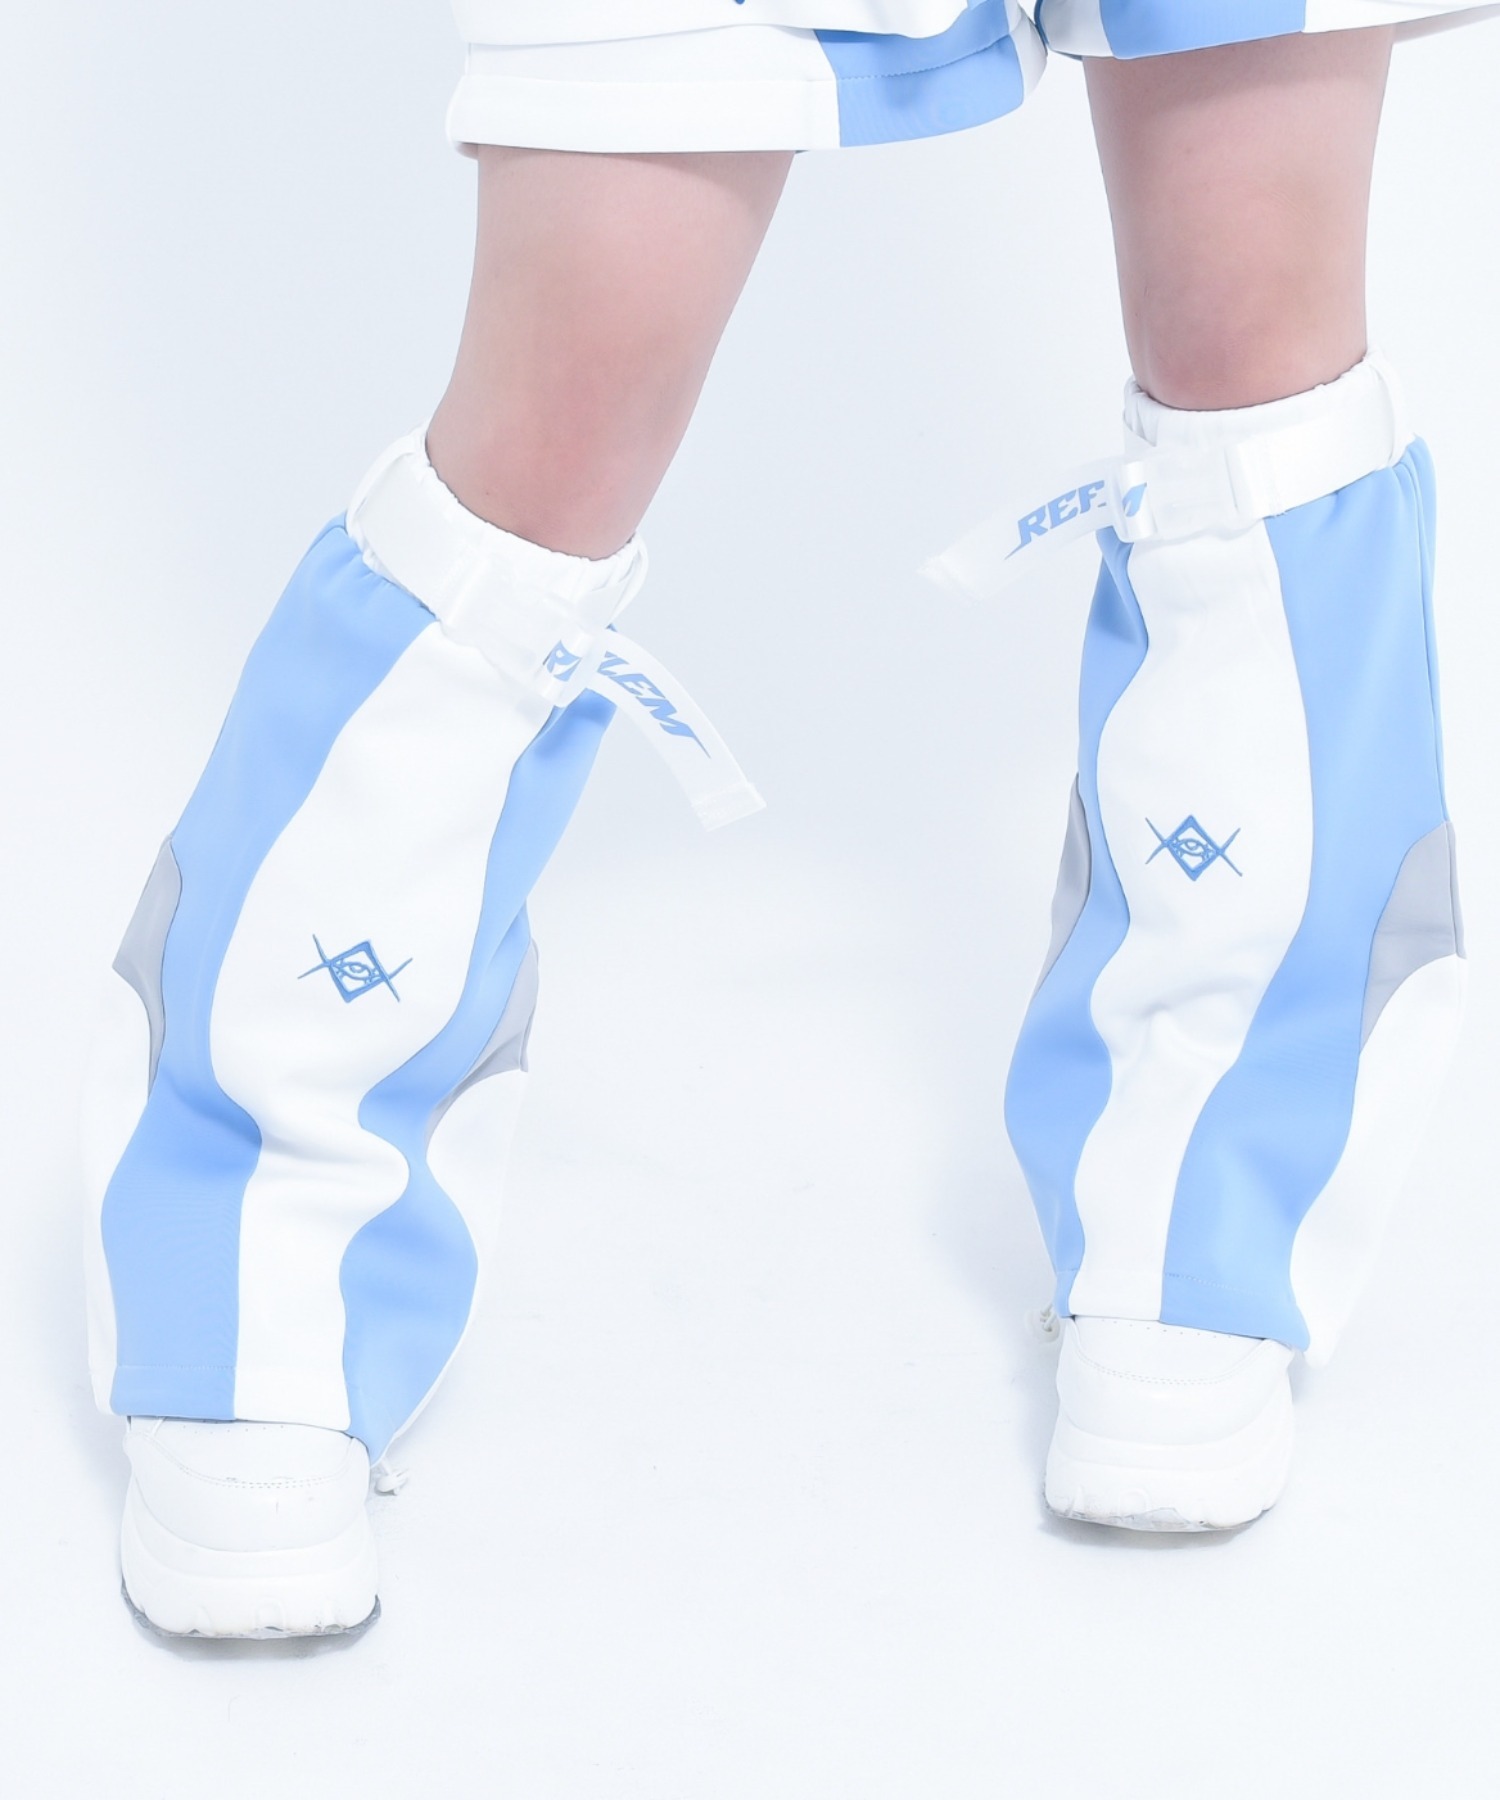 [REFLEM] Multi-switching leg warmers